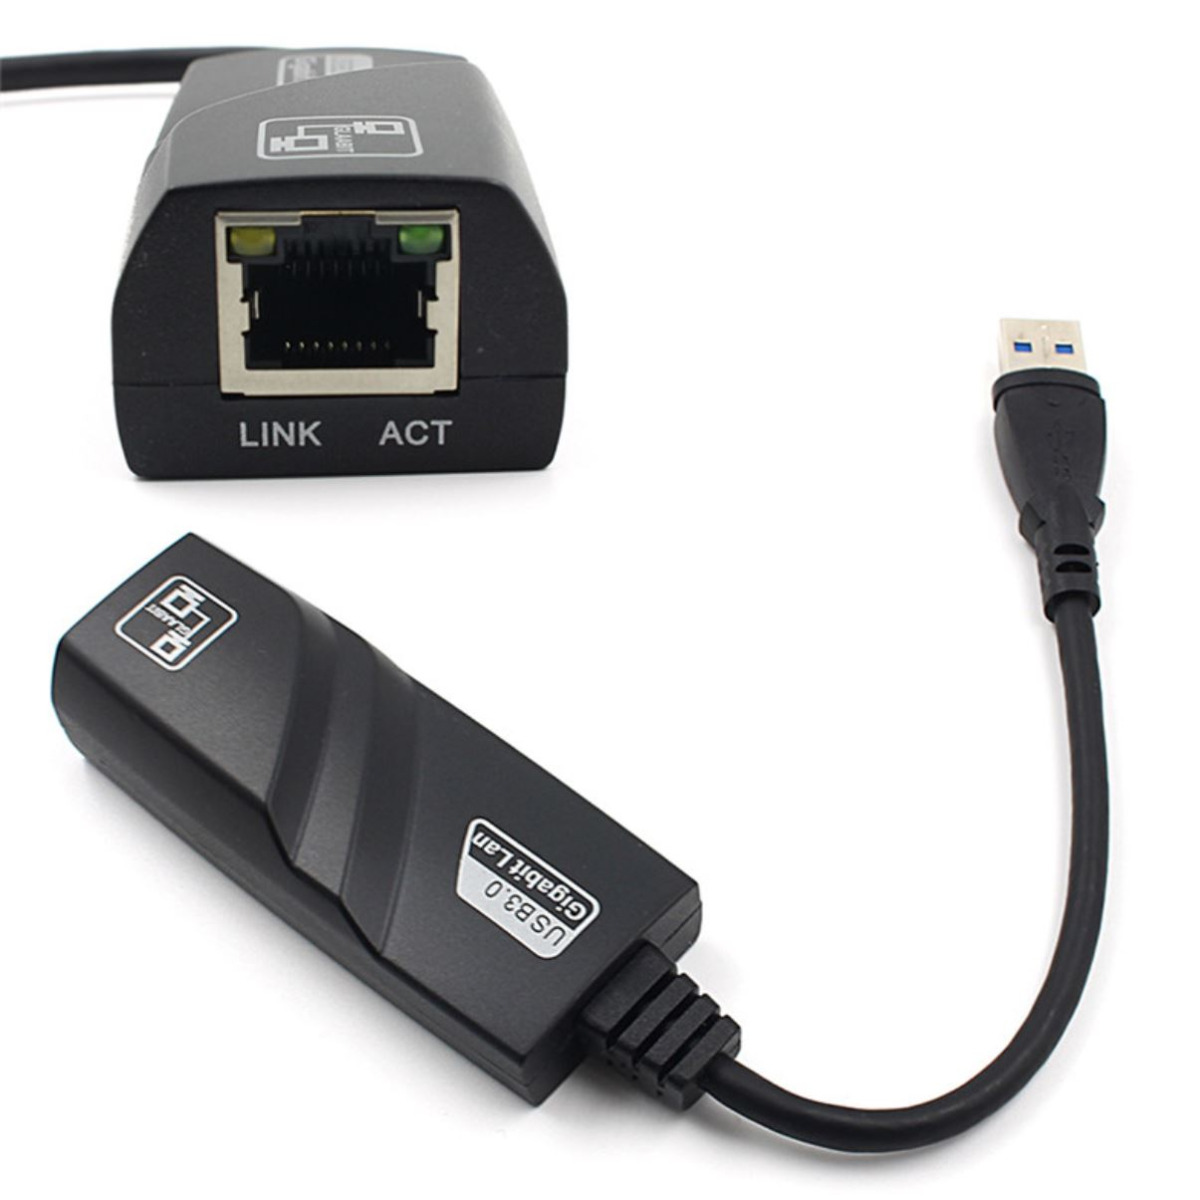 وصلة USB إلى كيبل إنترنت Ethernet بسرعة 1 قيقا-1195